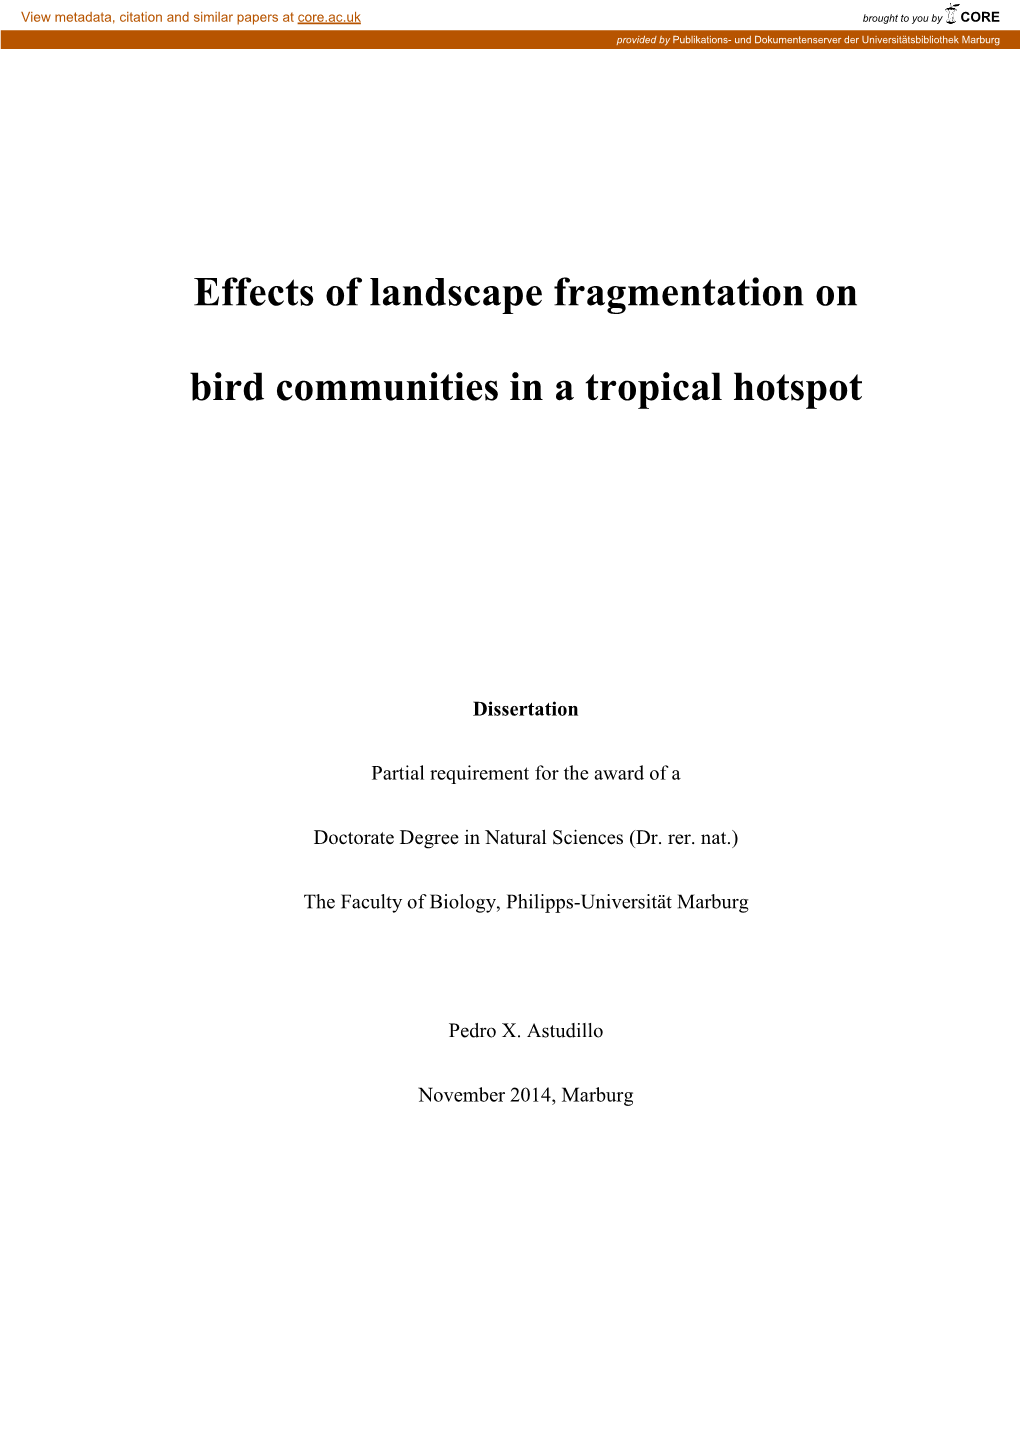 Effects of Landscape Fragmentation on Bird Communities in a Tropical Hotspot” Selbständing Und Ohne Unerlaubte Hilfe Verfasst Habe